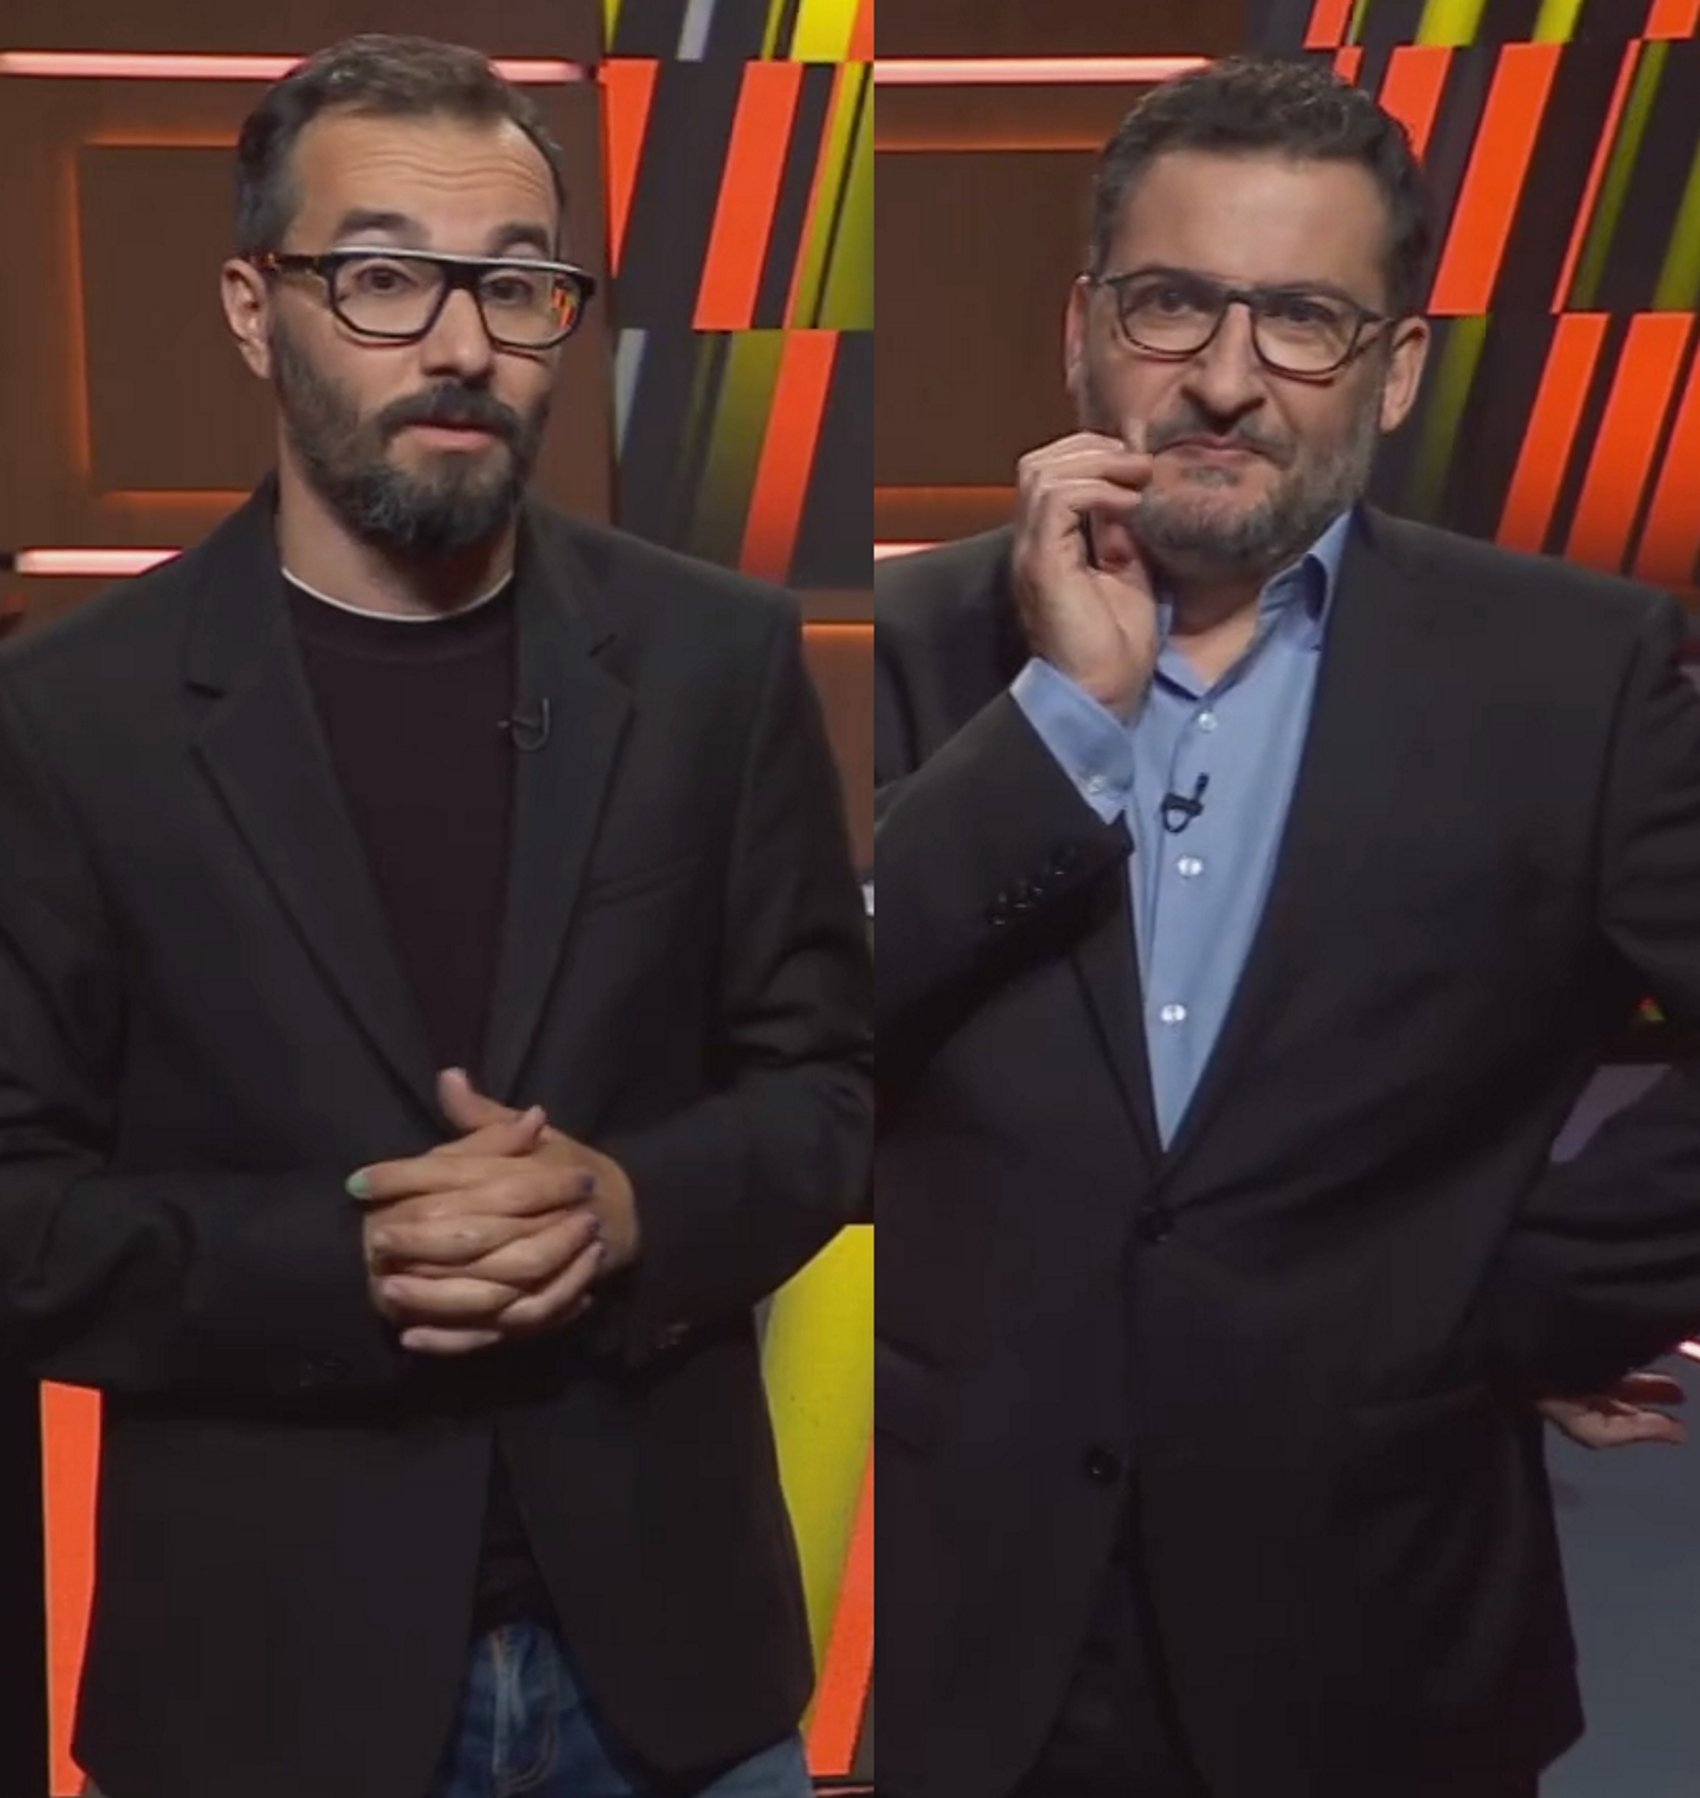 Toni Soler y Jair Domínguez, bajas en Está passant (TV3): hay una razón de peso